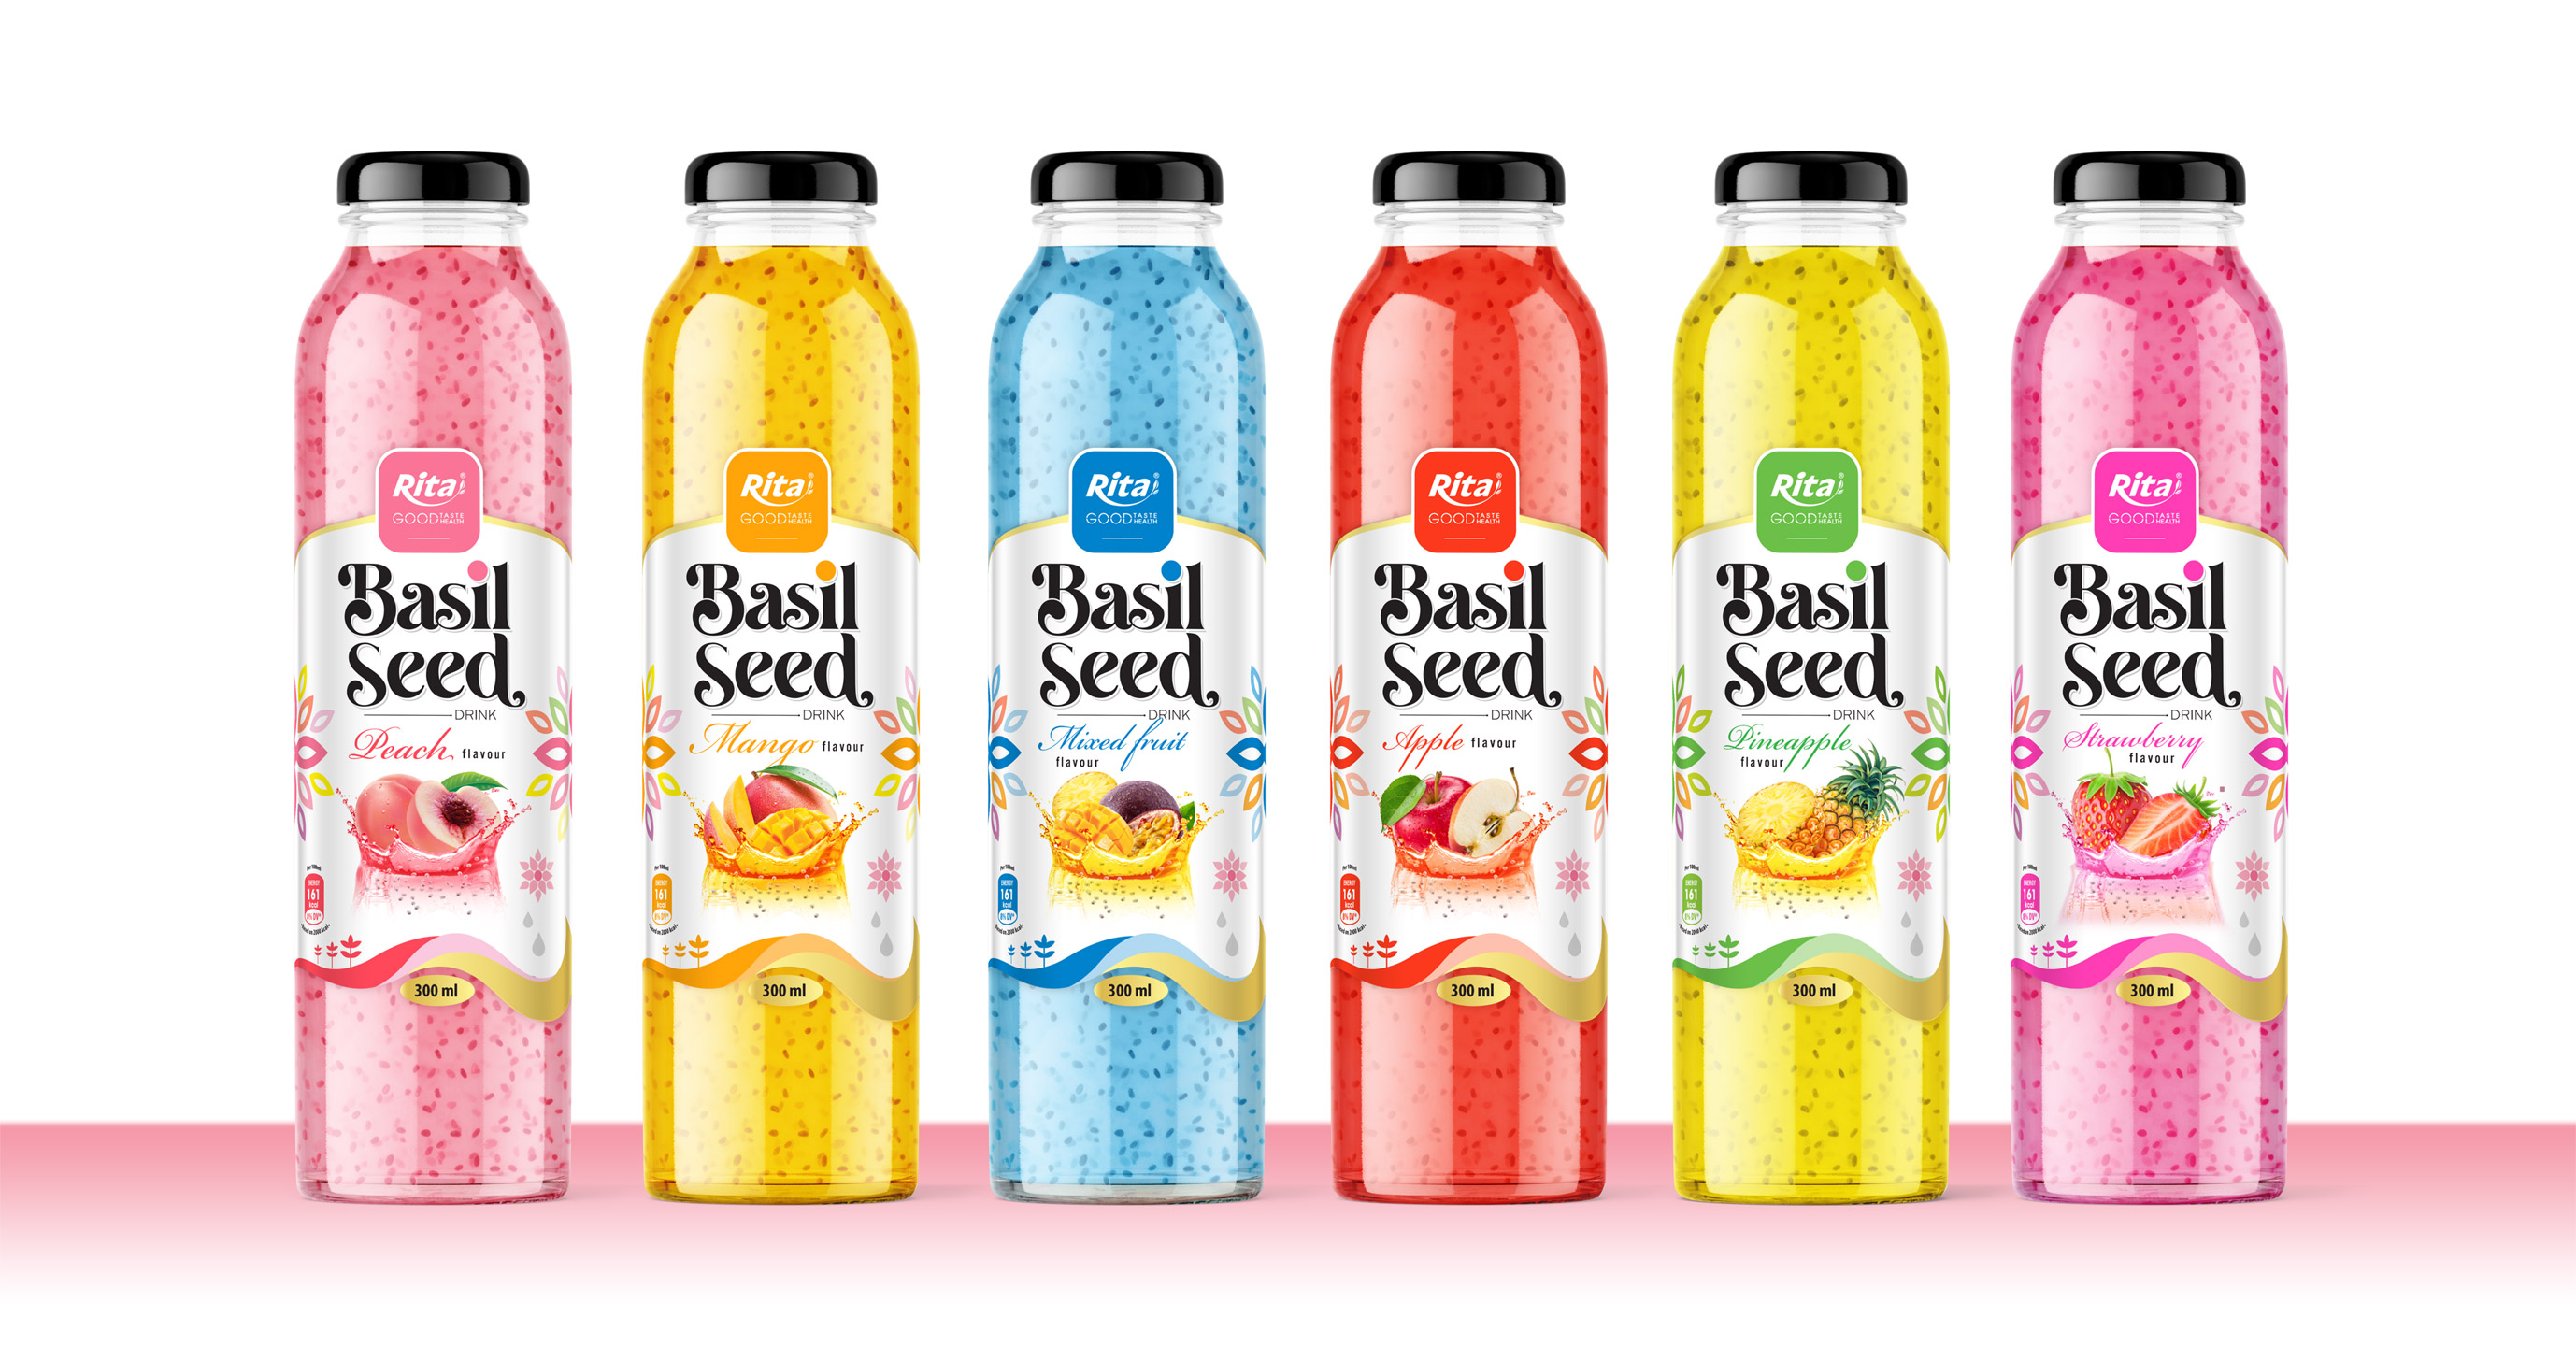 Series Basil seed drink 300ml